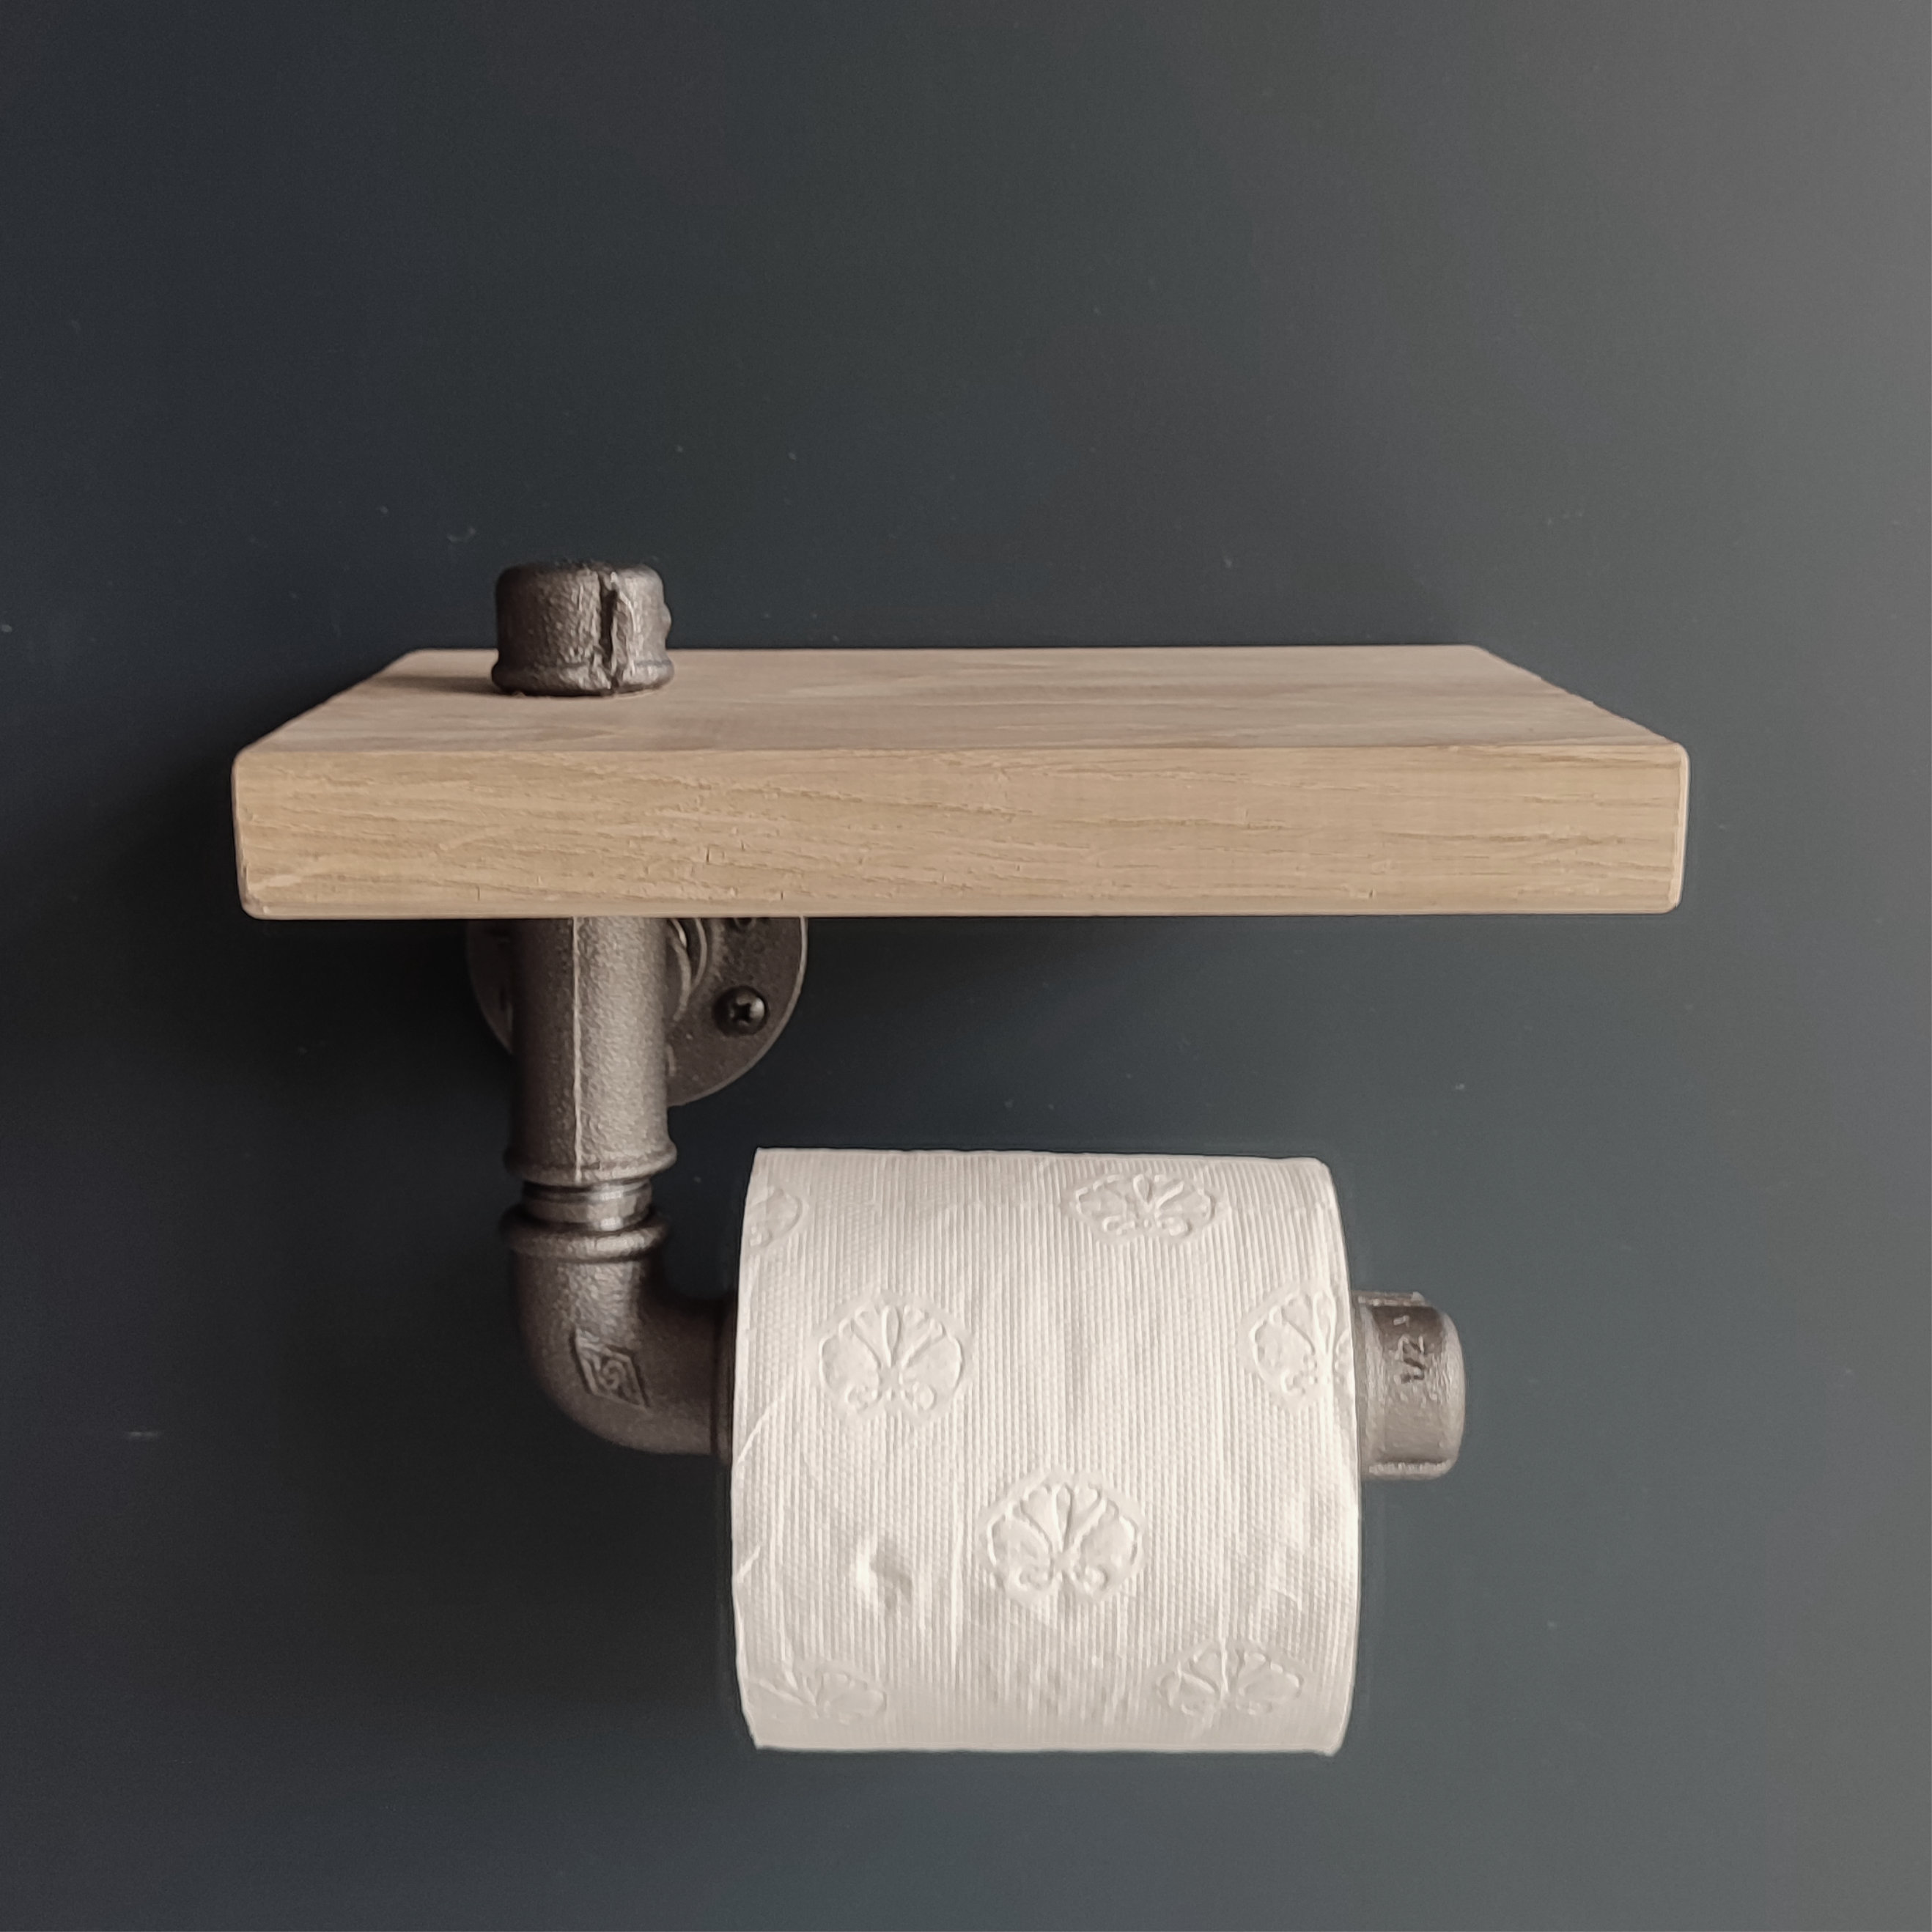 Porte rouleau WC bois et métal de style industriel - MC Fact